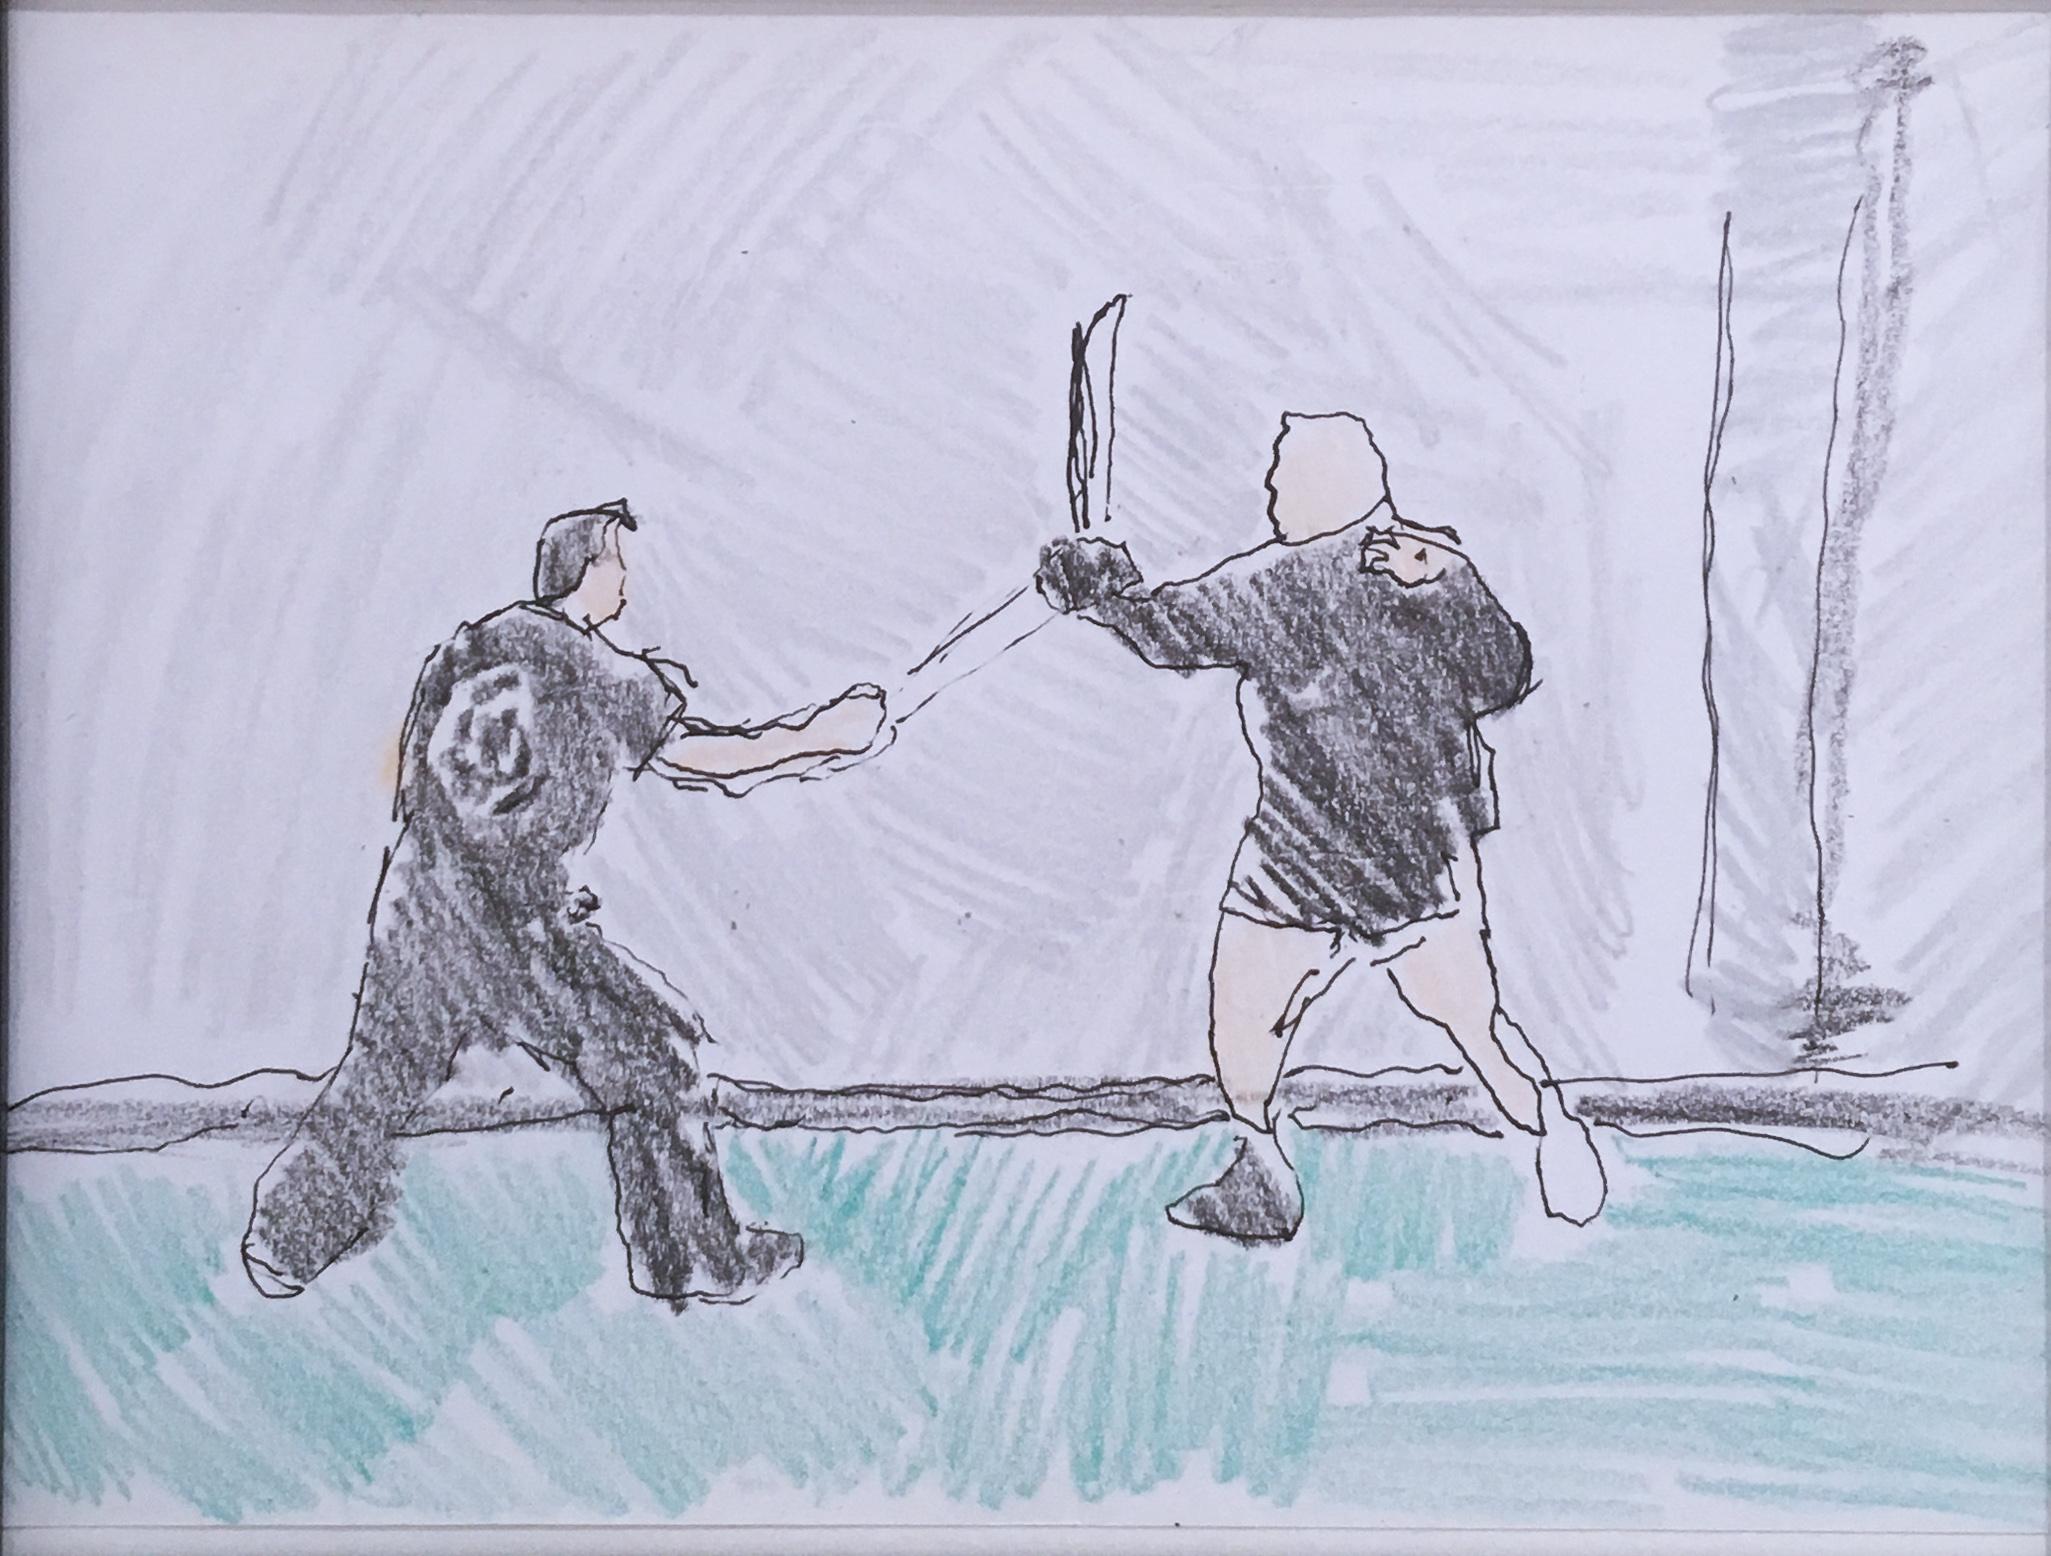 Sword Fight, 2018, stylo et crayon sur papier, figuratif, dessin, encadré - Painting de Macauley Norman